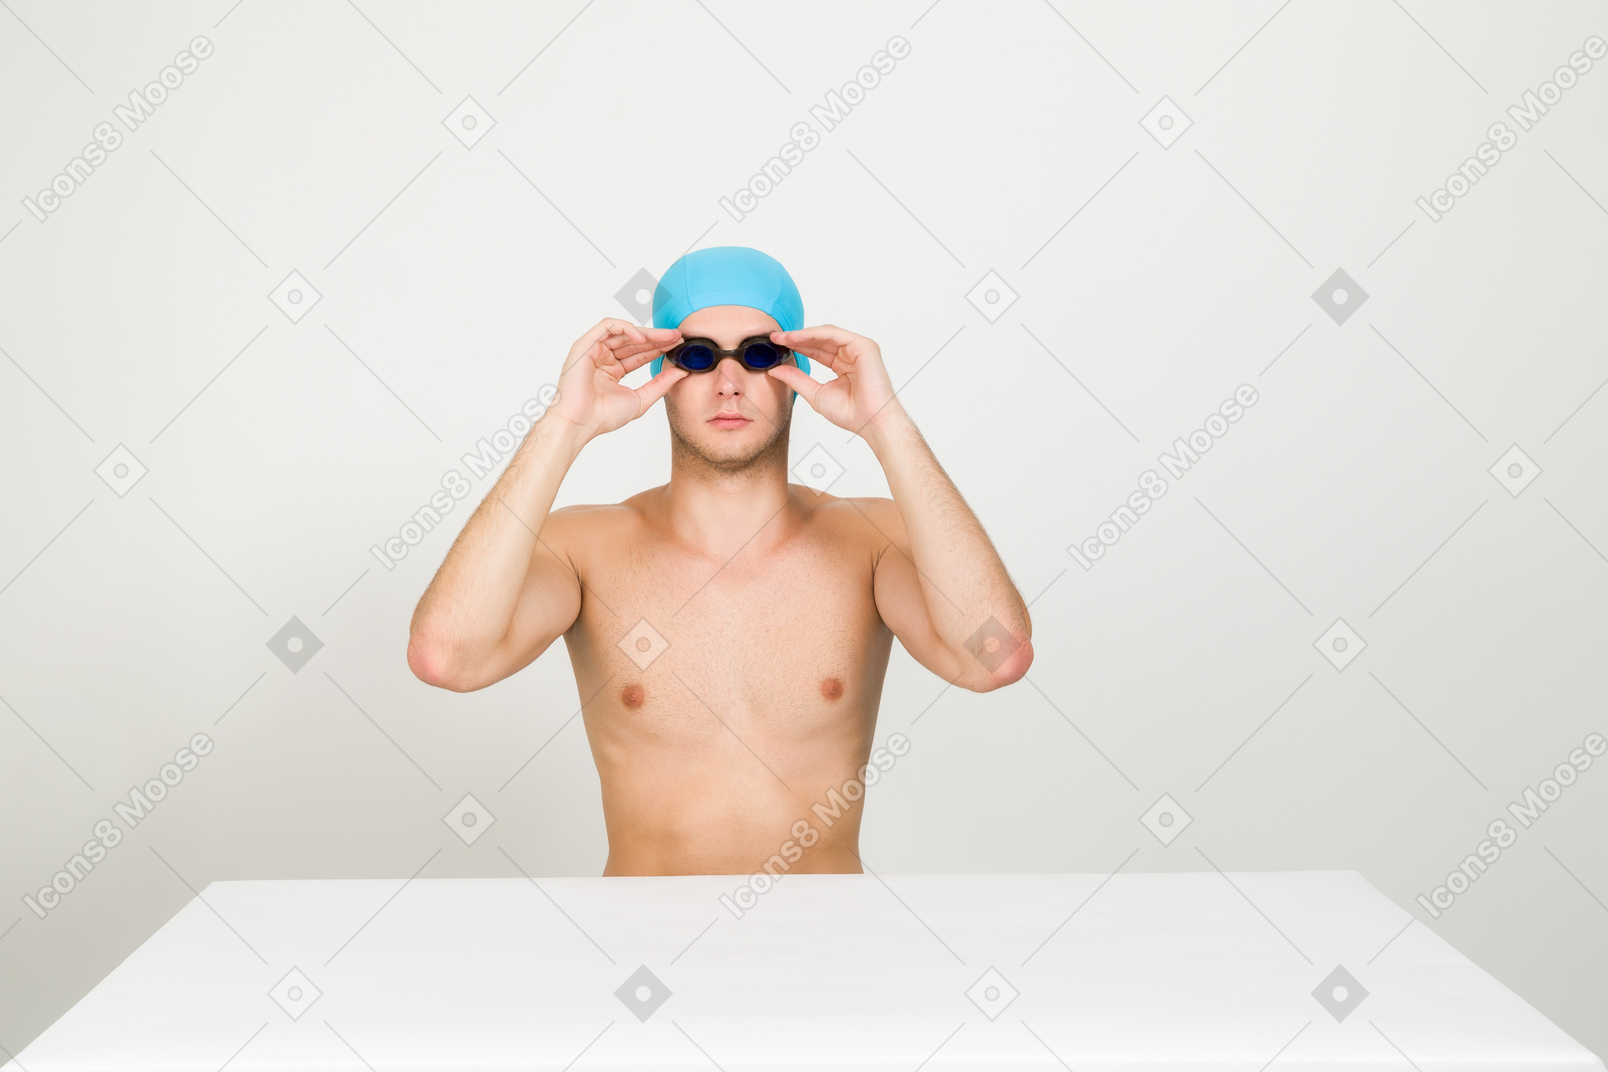 Nuotatore a torso nudo che regola gli occhiali